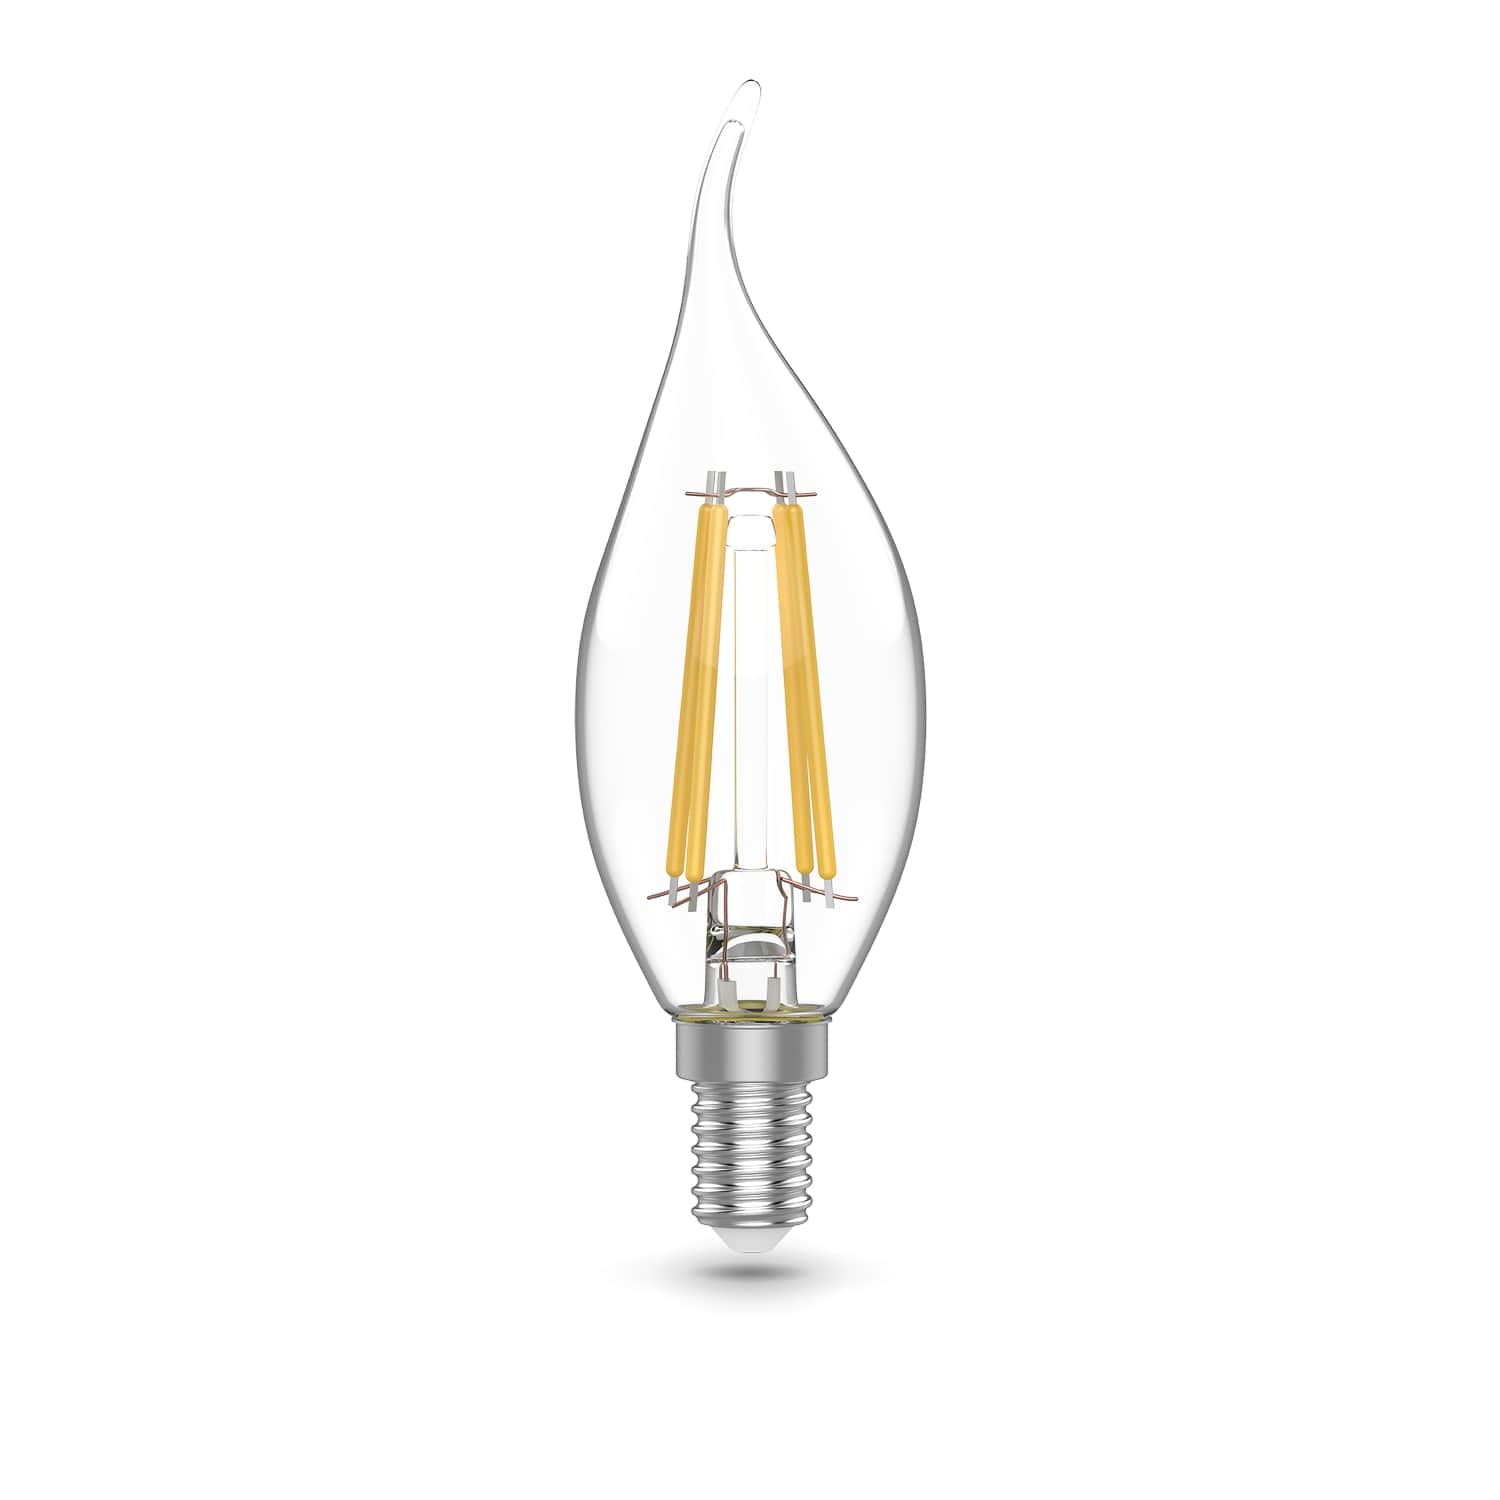 Лампа Gauss Basic Filament Свеча на ветру 5,5W 510lm 2700К Е14 LED (3 лампы в упаковке) 1/20 лампа светодиодная филаментная feron e14 5w 2700k свеча на ветру прозрачная lb 59 25575